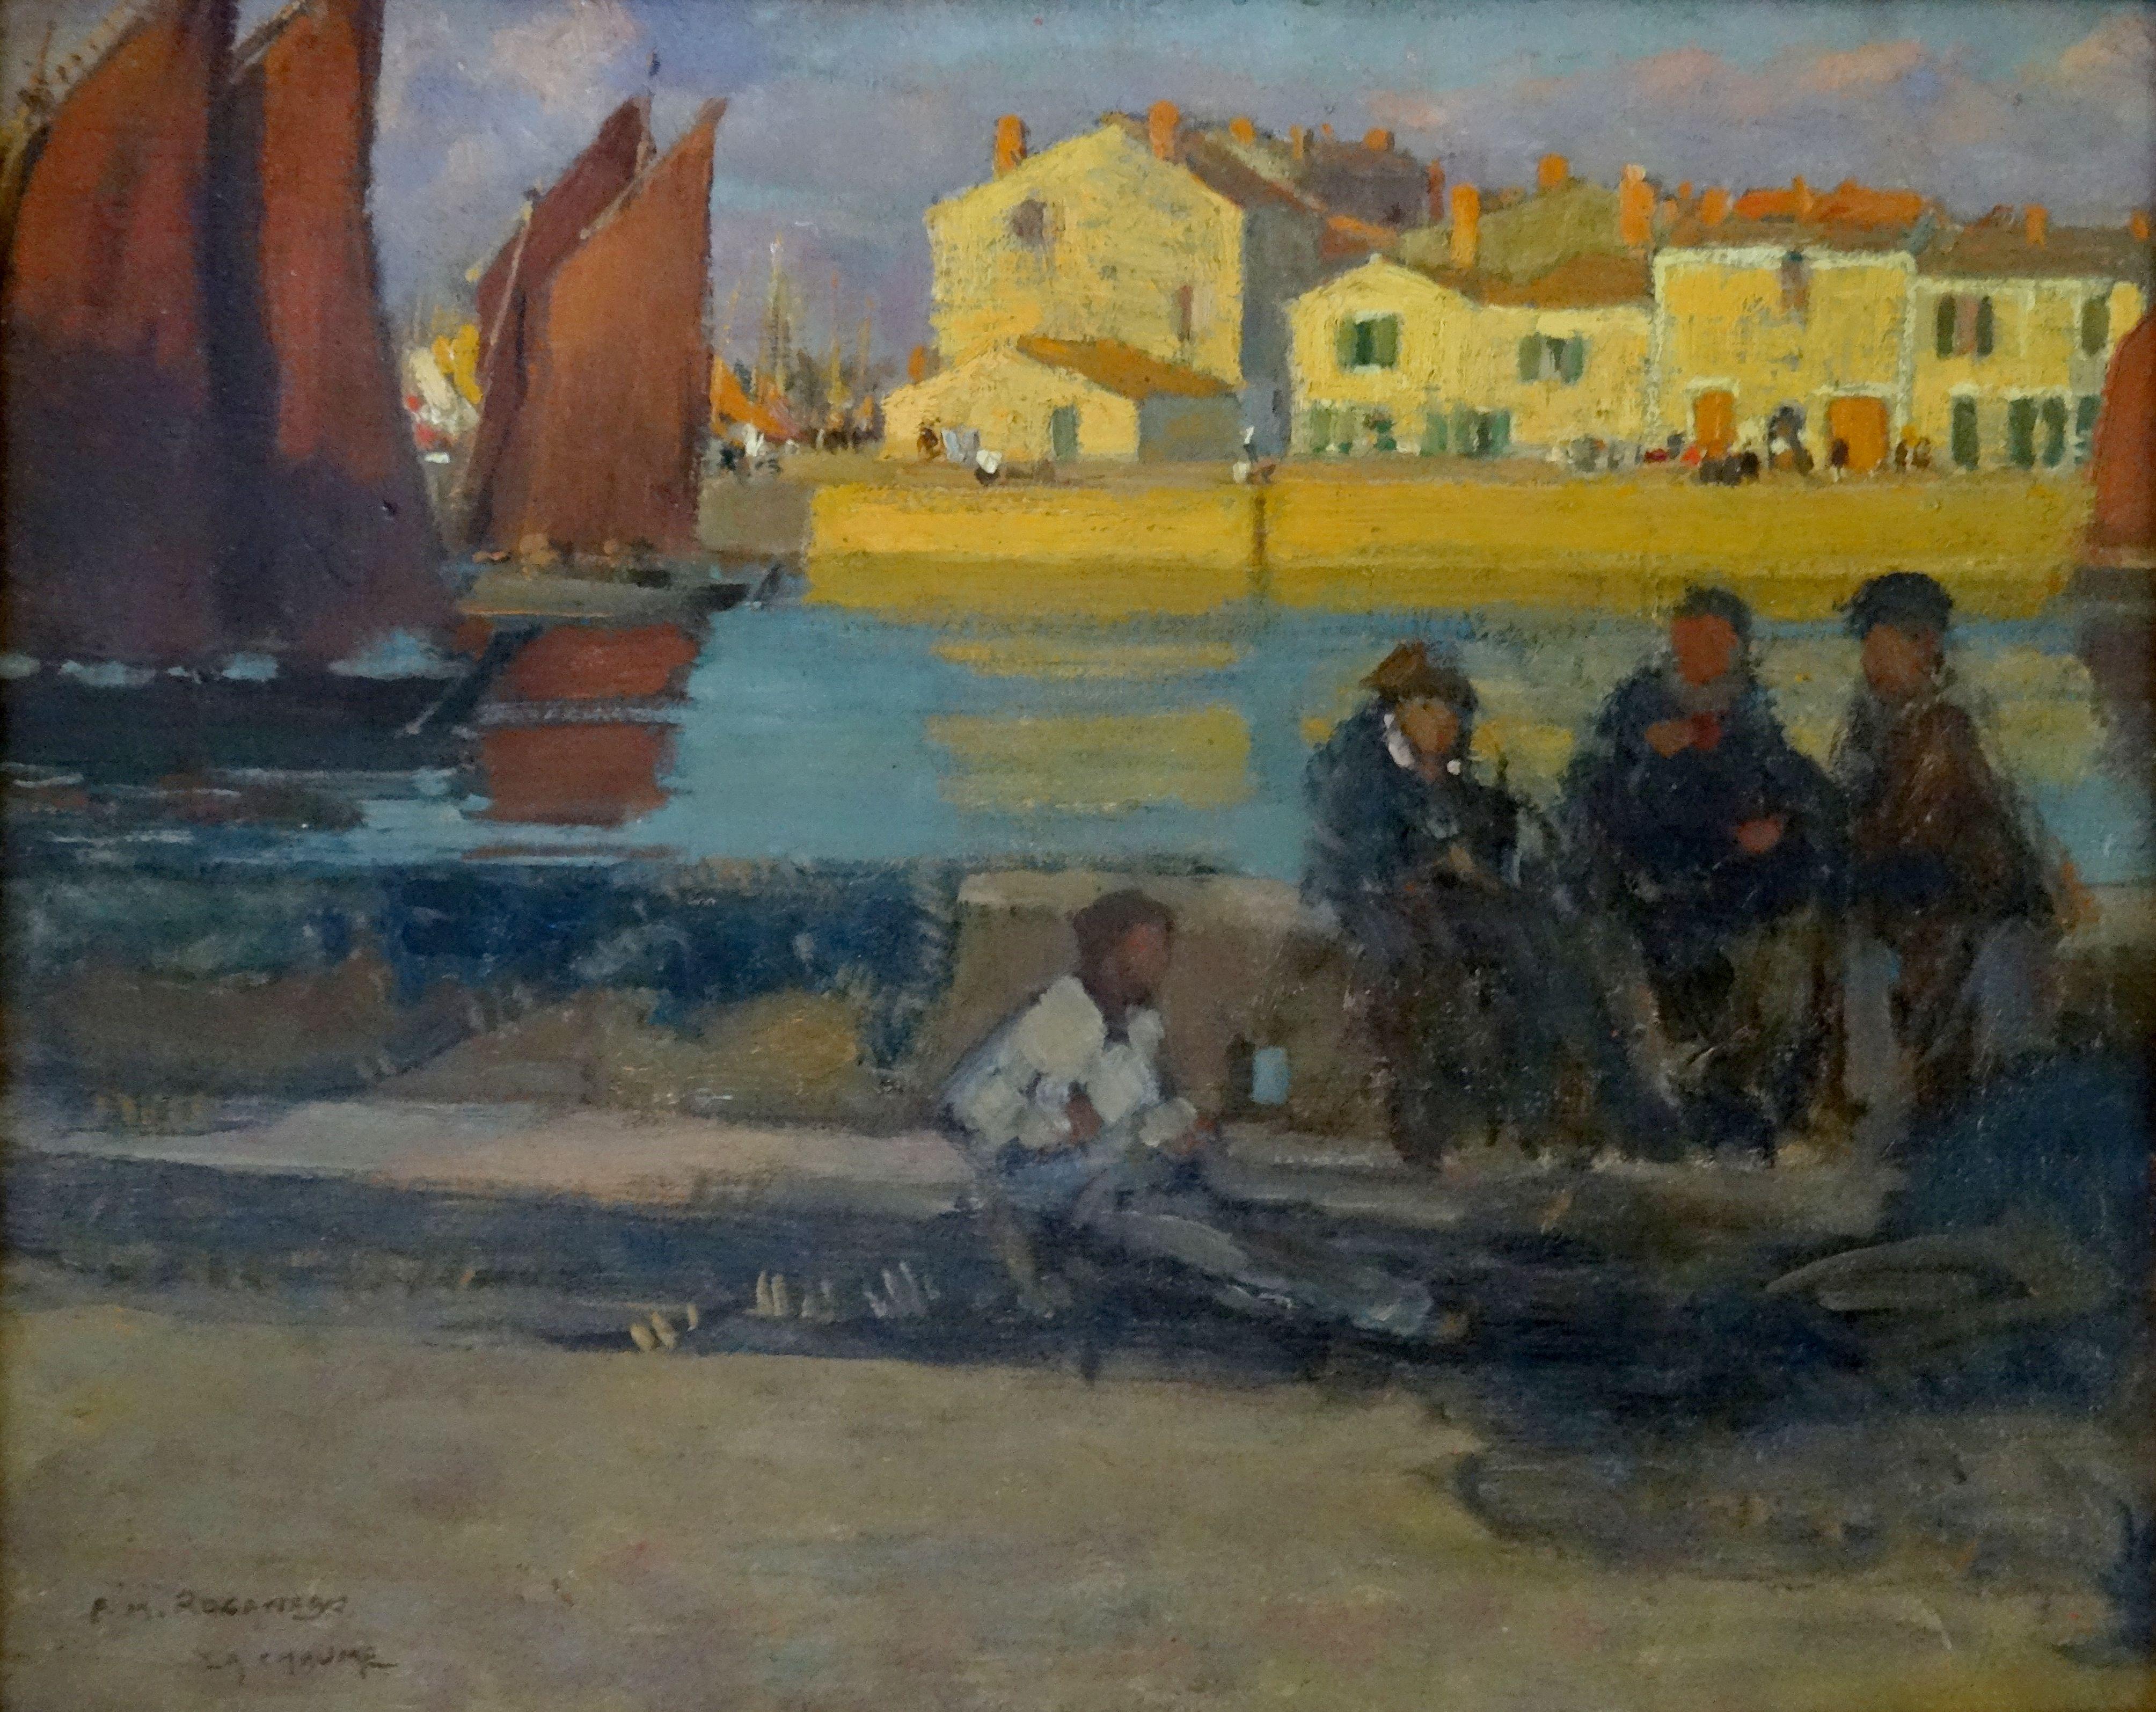 Le port de la Chaume. Oil on canvas, 33x41 cm